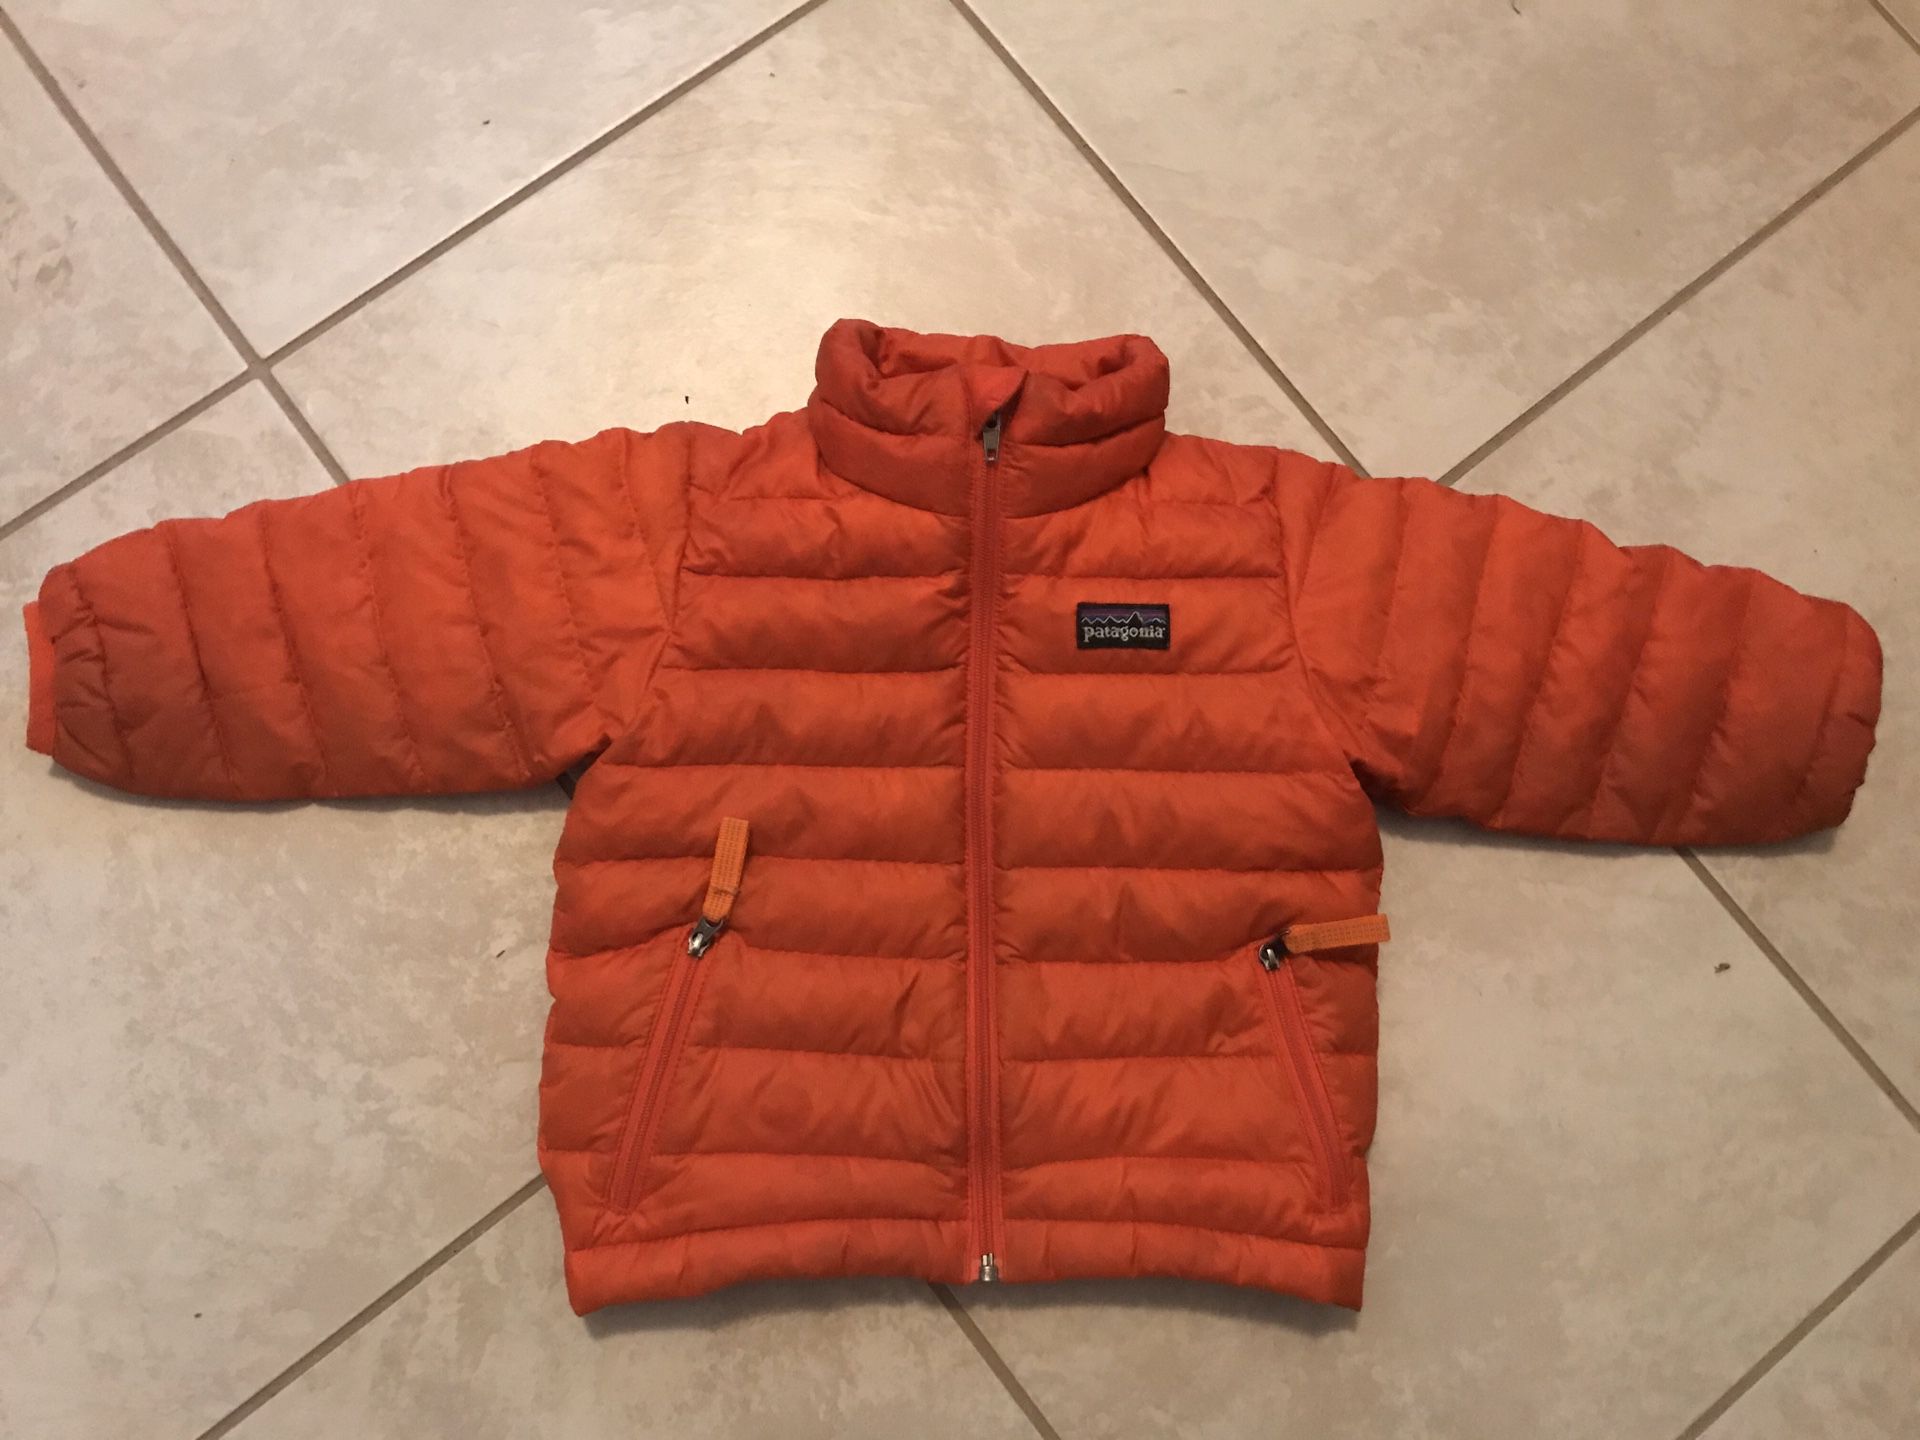 Patagonia winter jacket, kids 1T